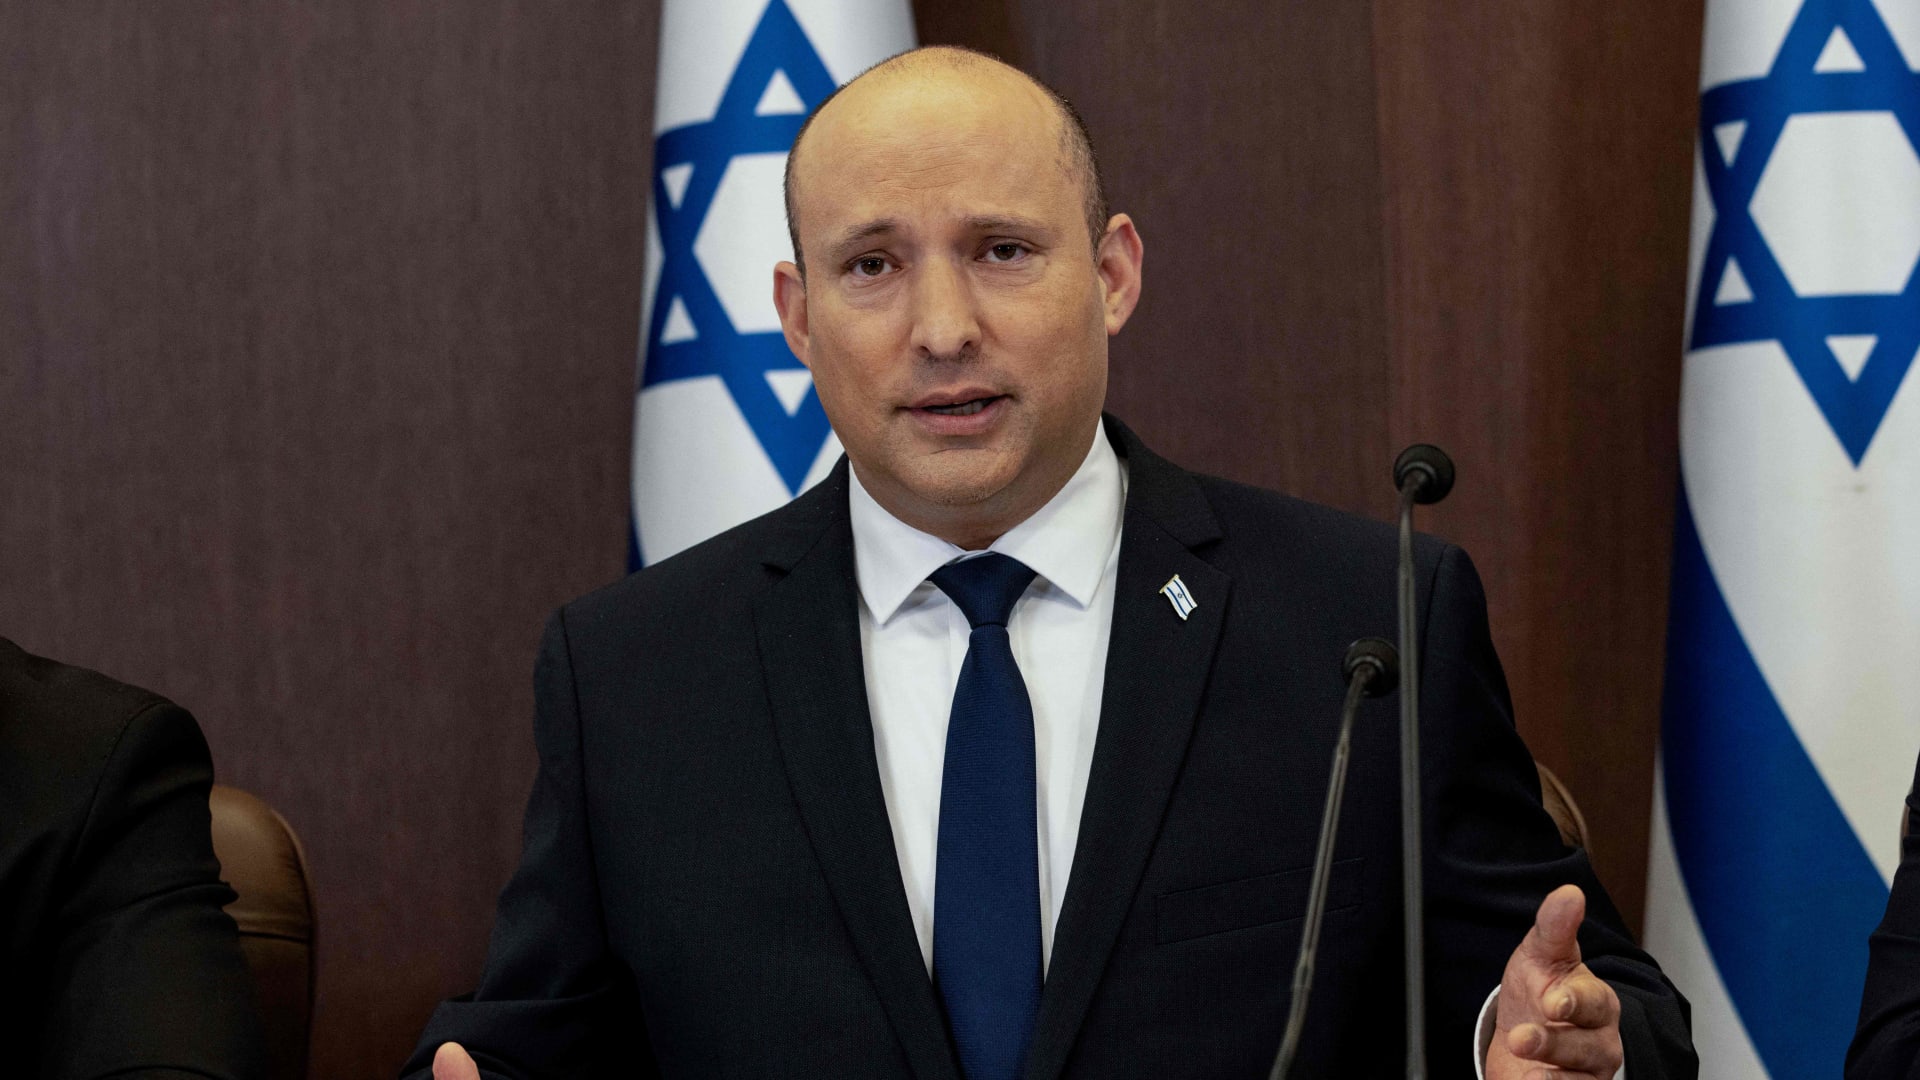 رئيس وزراء إسرائيل يوجه رسالة "تفاؤل" بنهاية زيارته إلى الإمارات.. وتأسيس صندوق مشترك بين البلدين